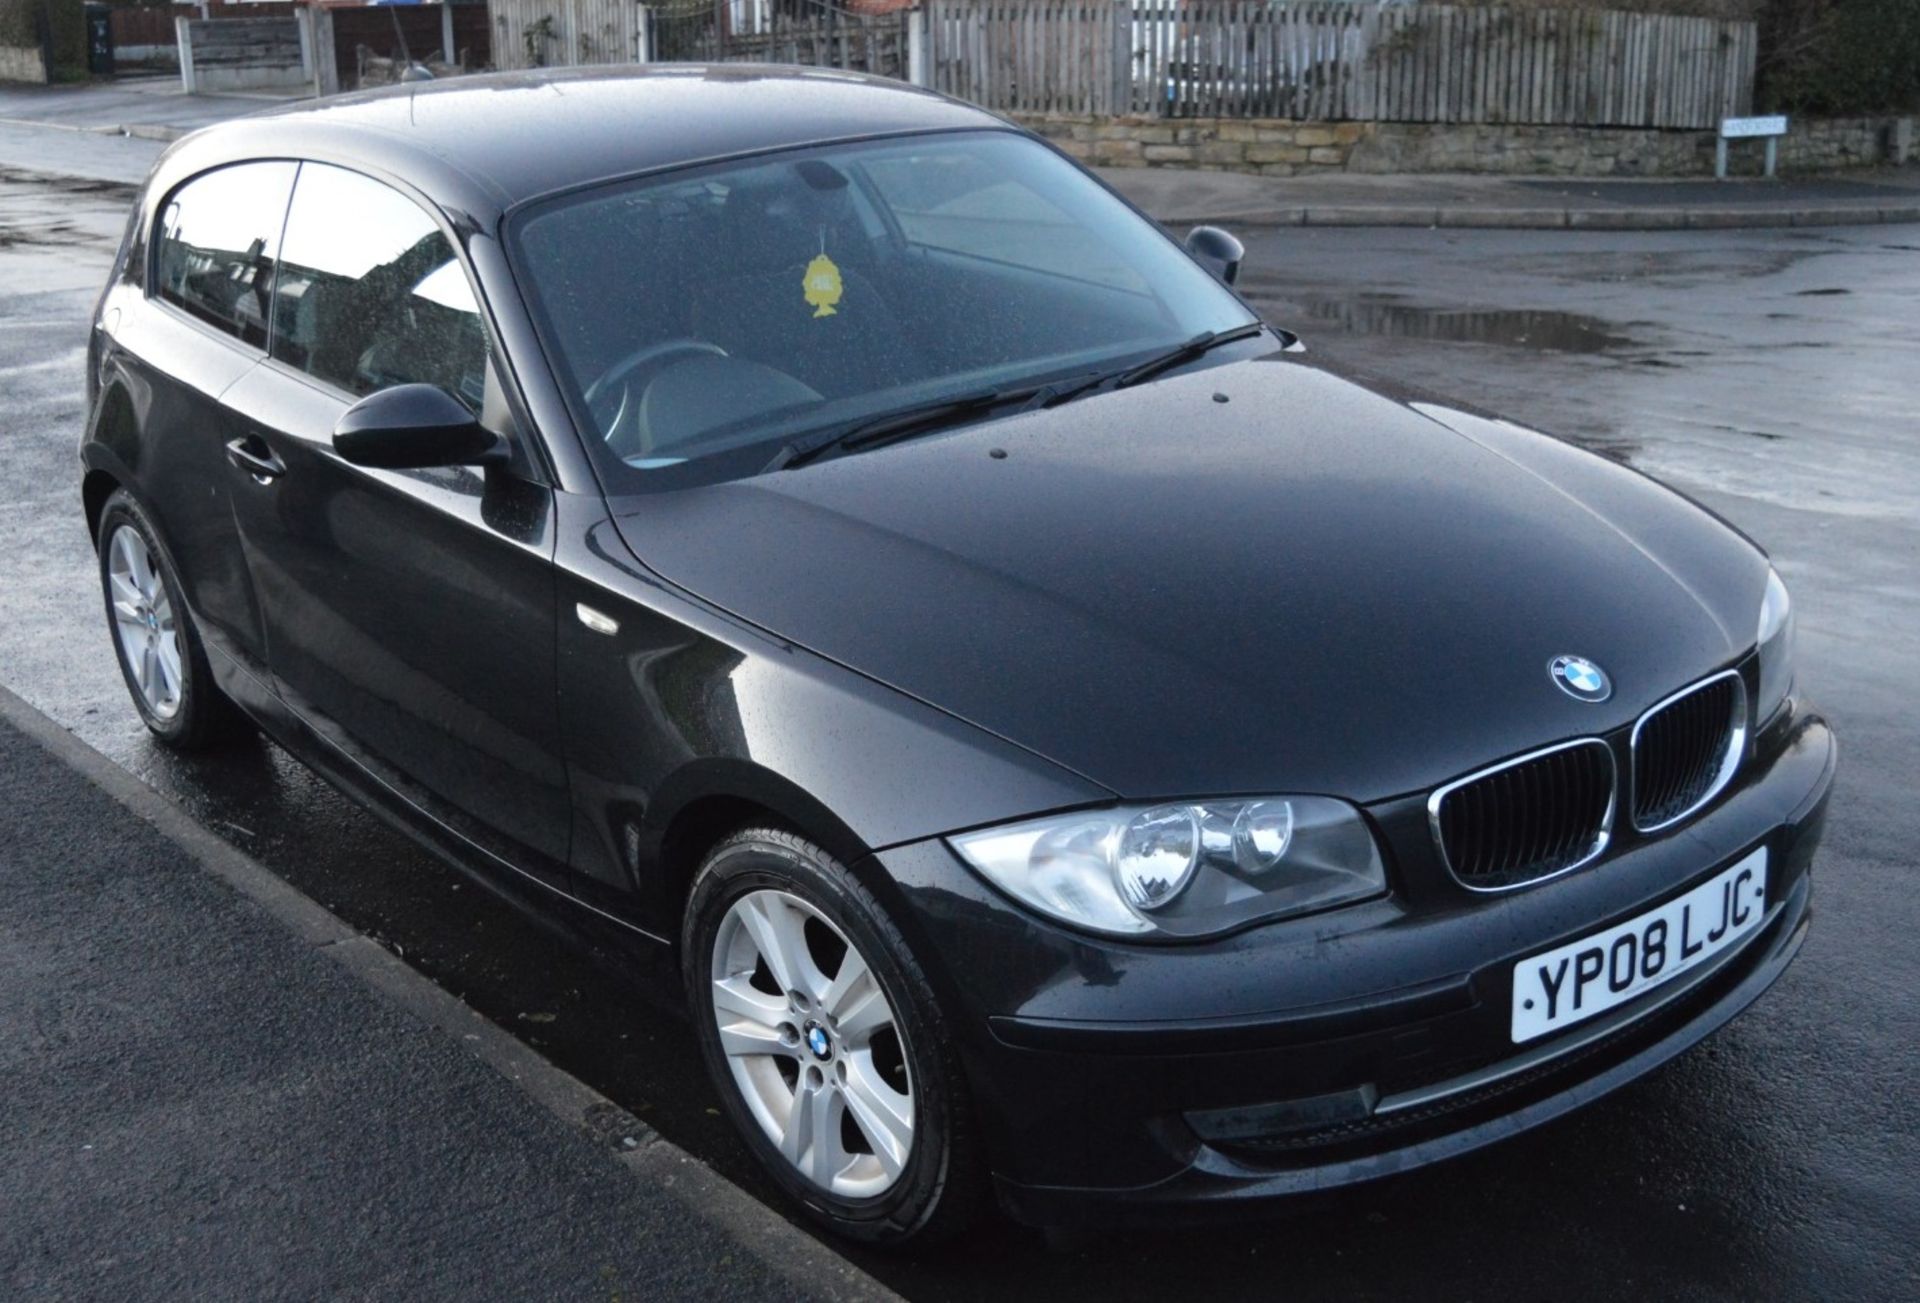 1 x 2008 BMW 1 Series 118d 3 Door Black 2l - £30 Per Year Road Tax - MOT Until January 2020 - - Image 18 of 31